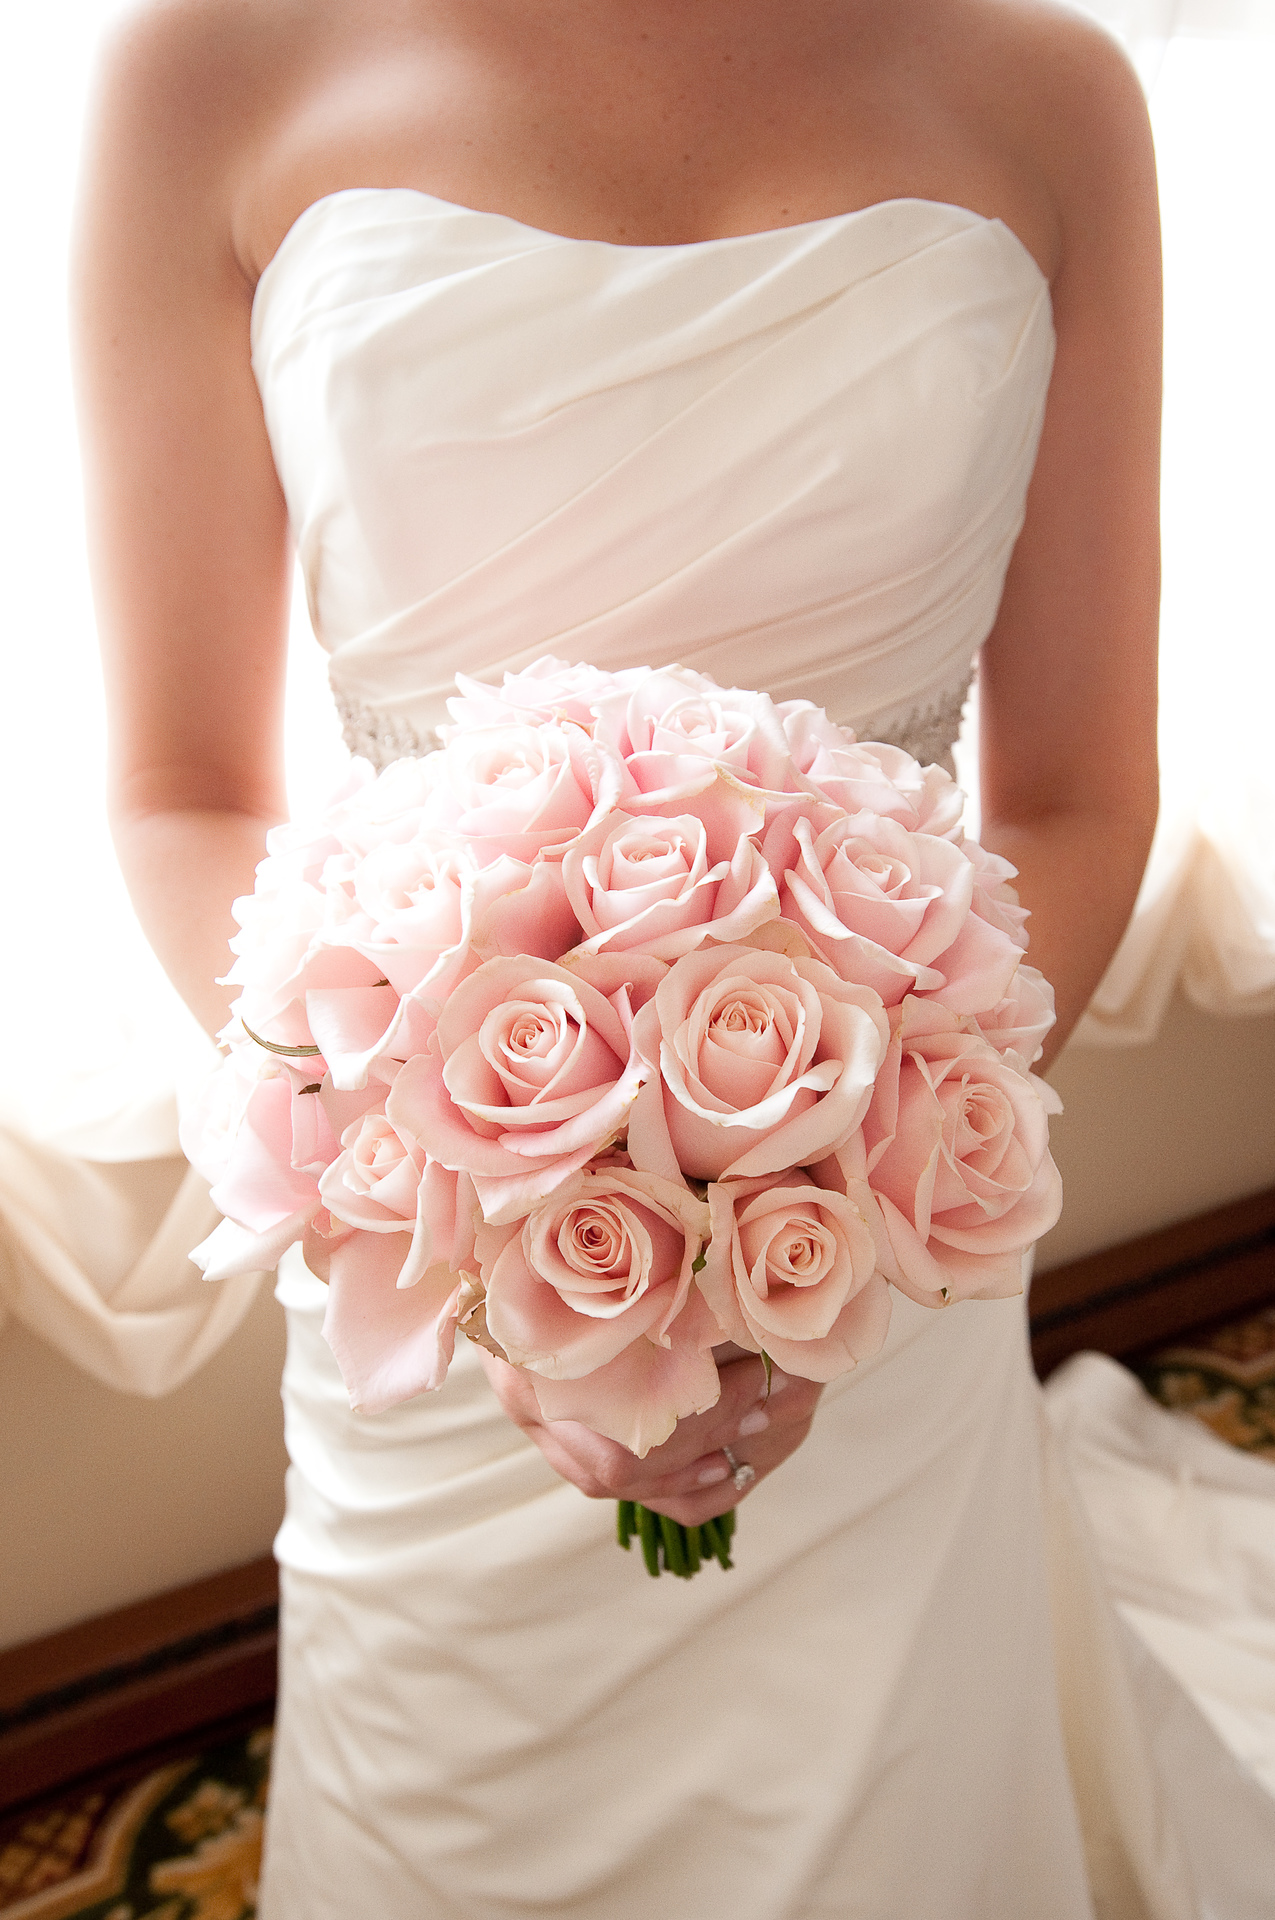 Hoa hồng lãng mạn và là lựa chọn yêu thích của cô dâu hiện đại